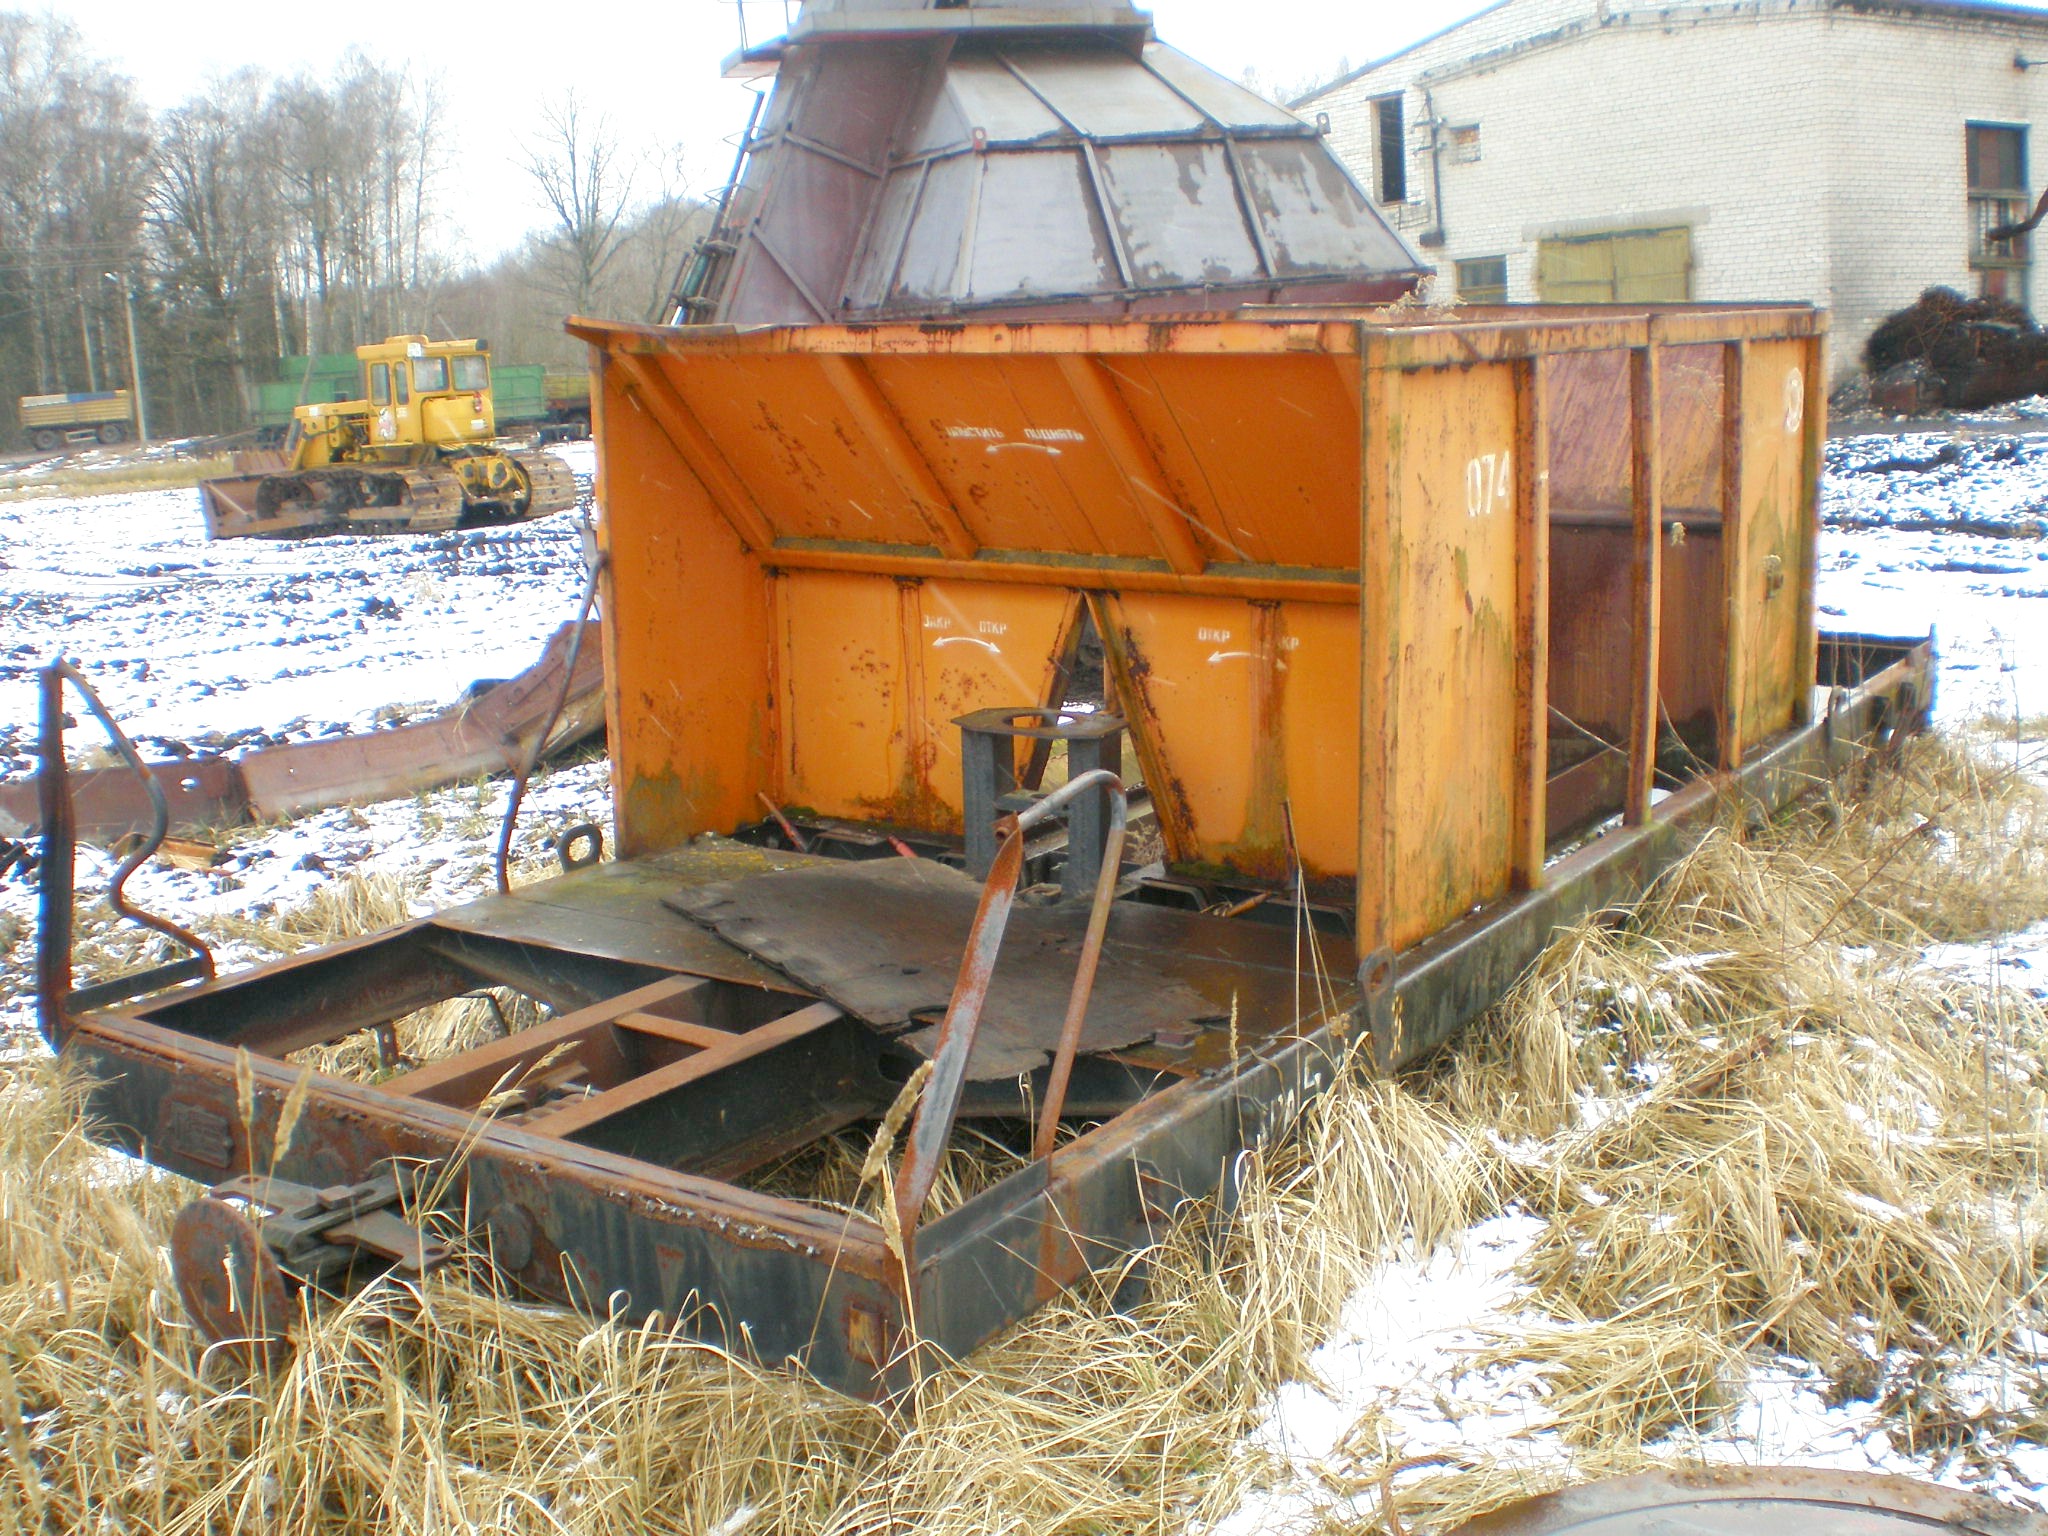 Узкоколейная железная дорога Нестеровского торфопредприятия  — фотографии, сделанные в 2008 году (часть 2)